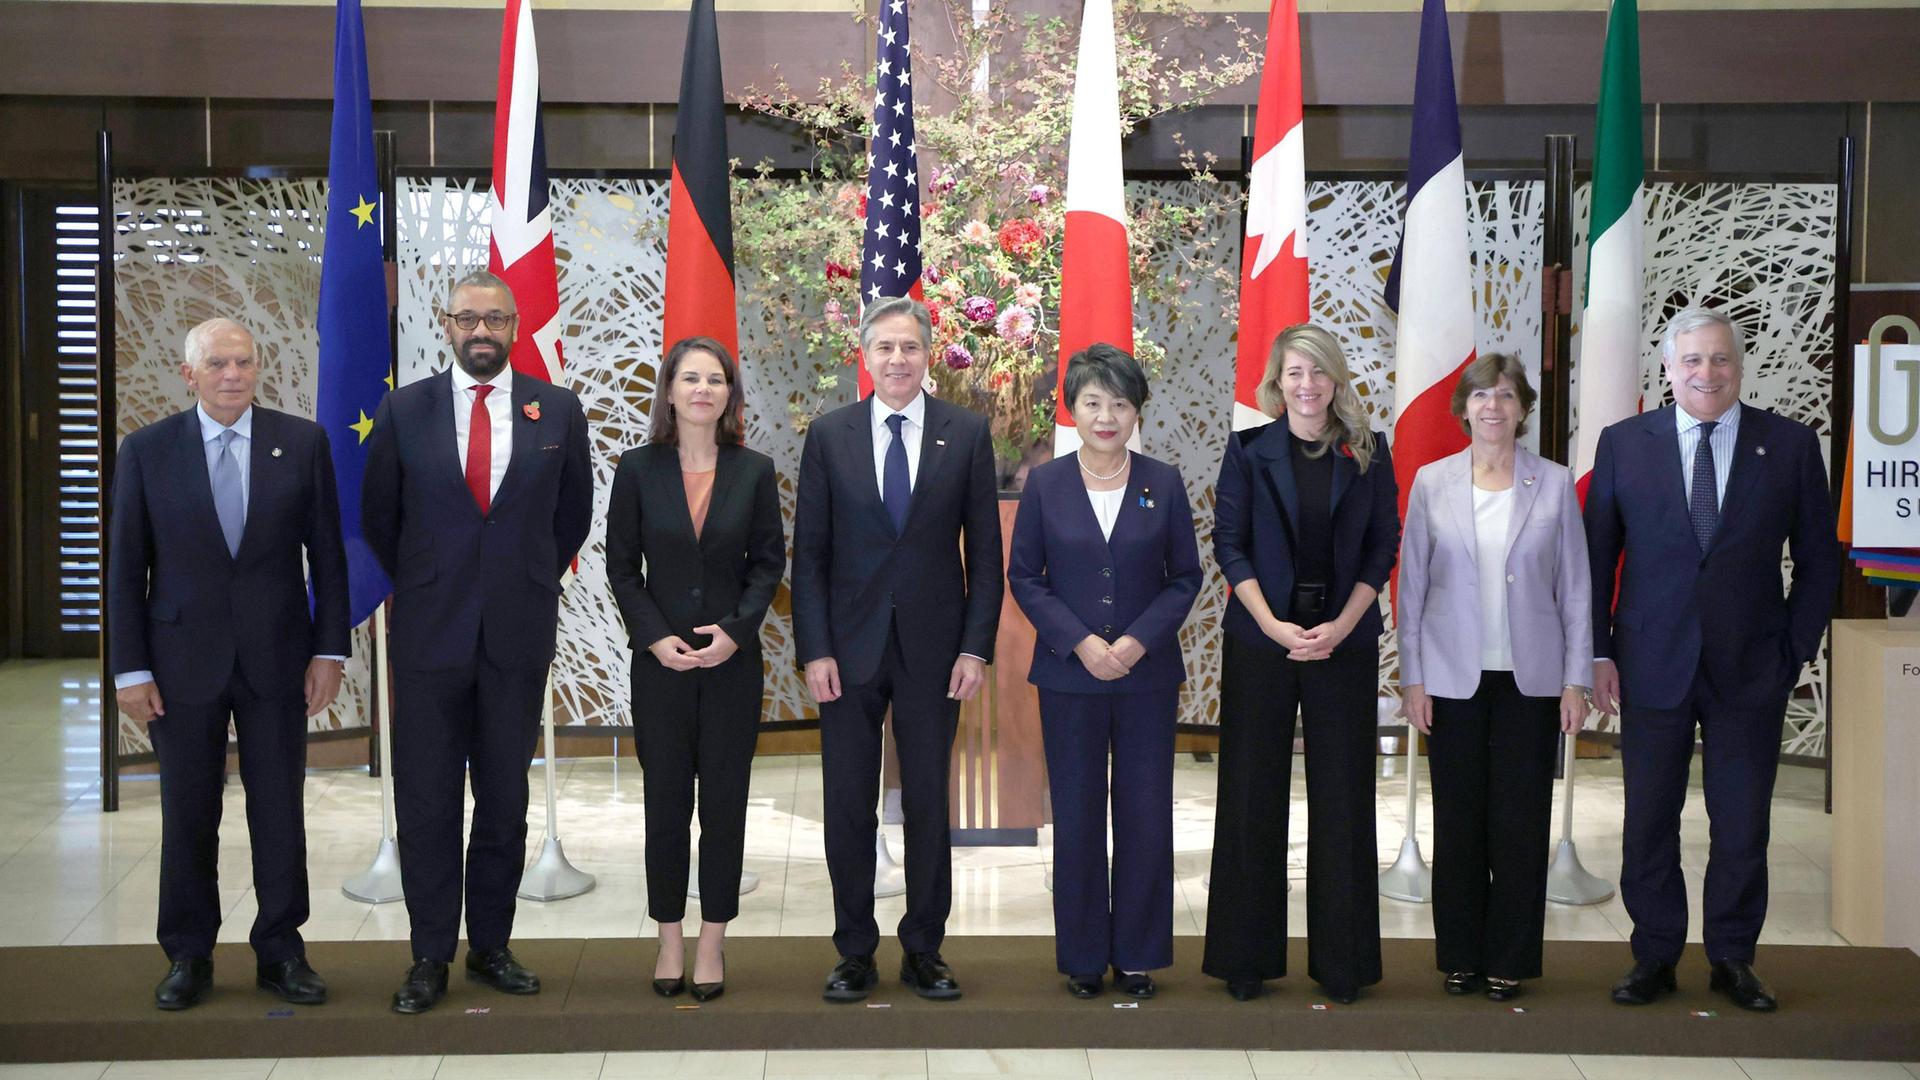 Gruppenfoto der G7-Außenminister, sie stehen vor den Landesflaggen.